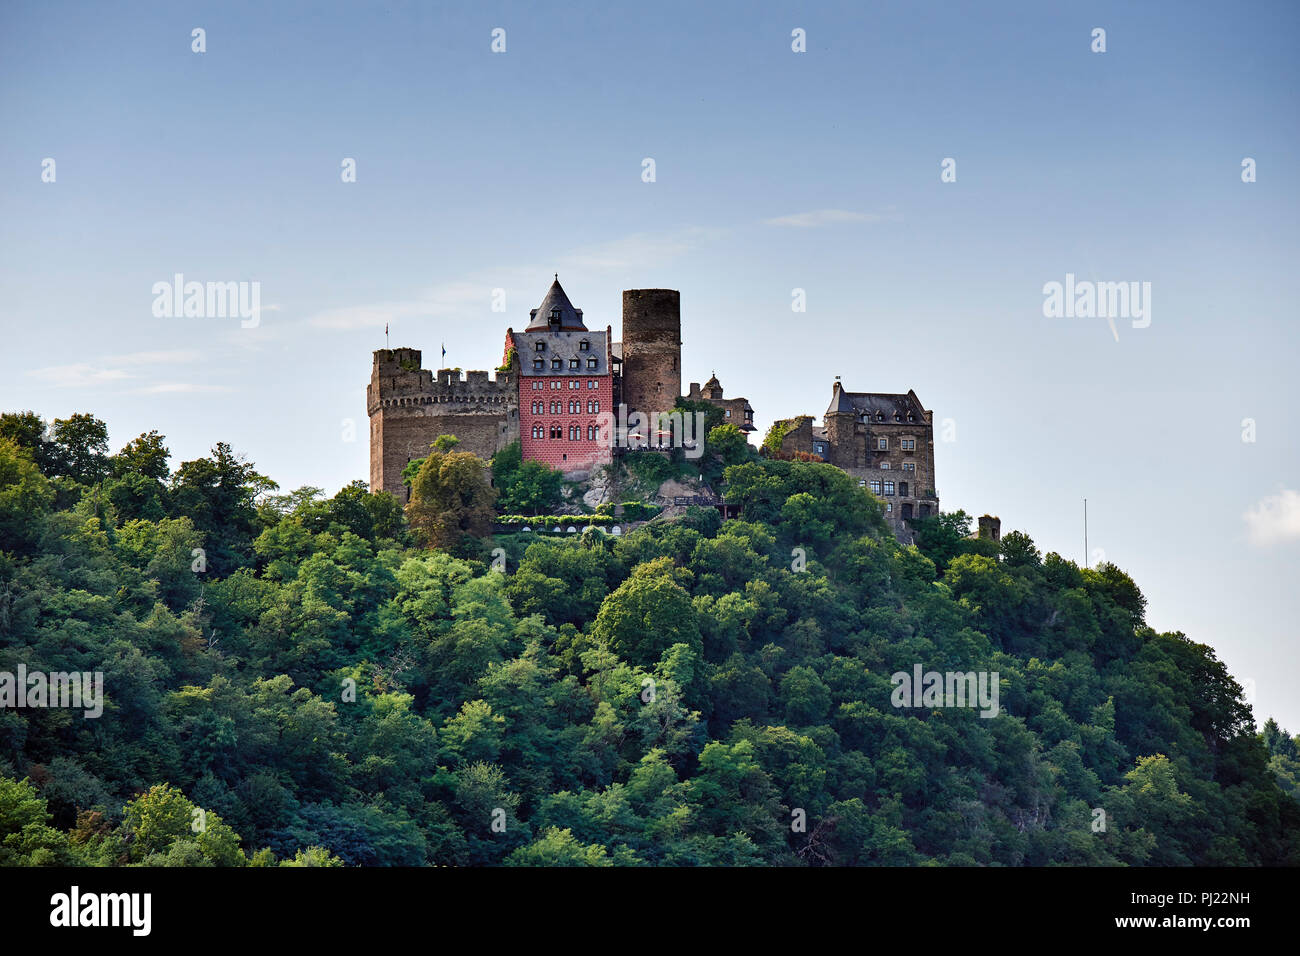 El castillo de Schönburg encima de la ciudad medieval de Oberwesel, Rin. Es un castillo medieval que data del siglo 10 o 11. Foto de stock